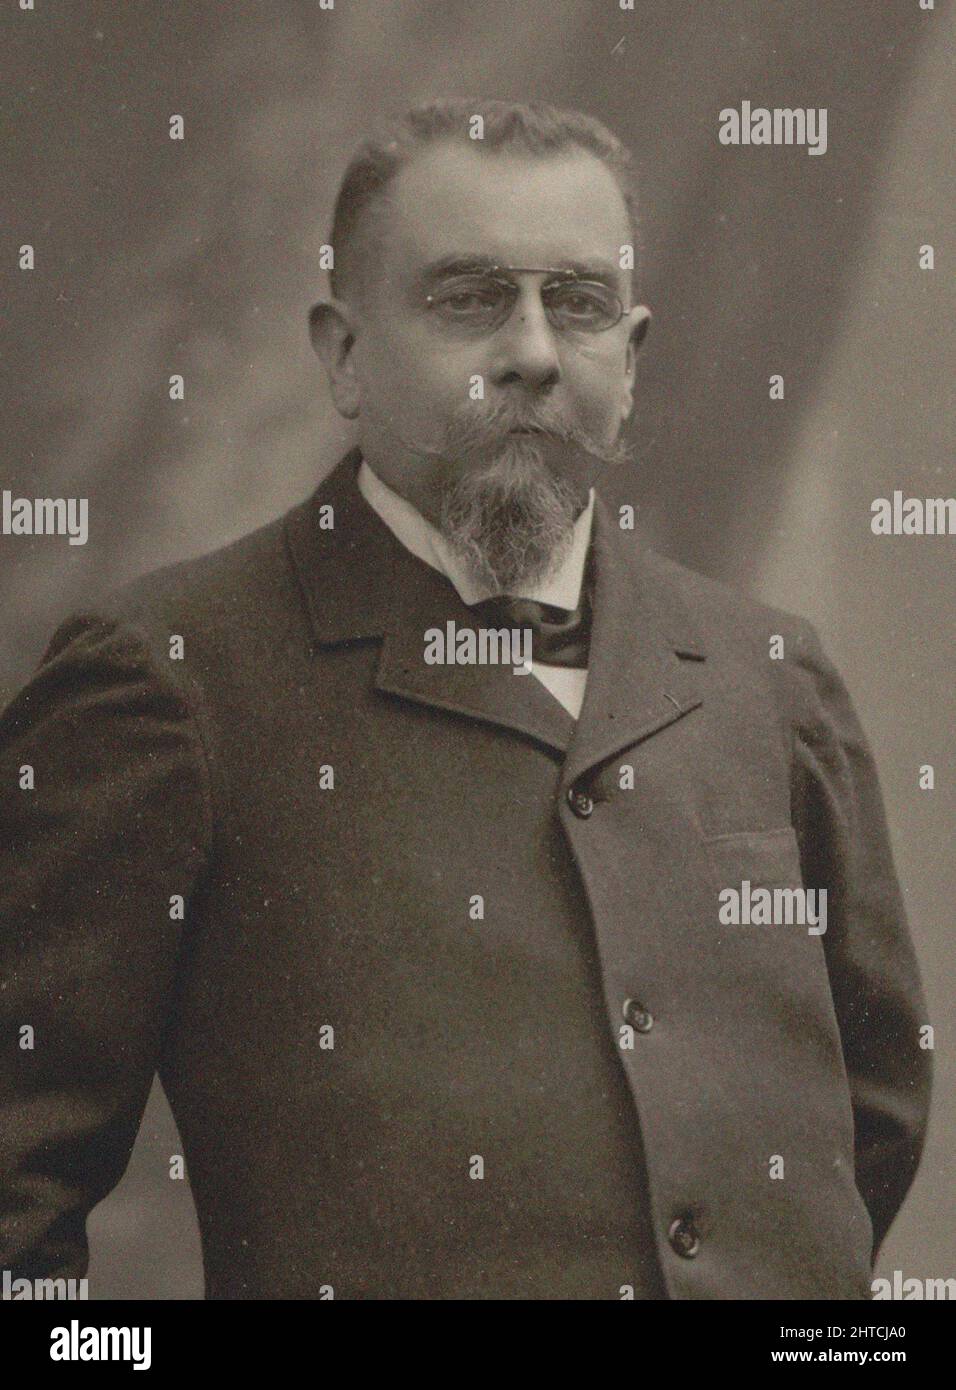 Retrato del compositor Albert Lavignac (1846-1916). Colección privada. Foto de stock